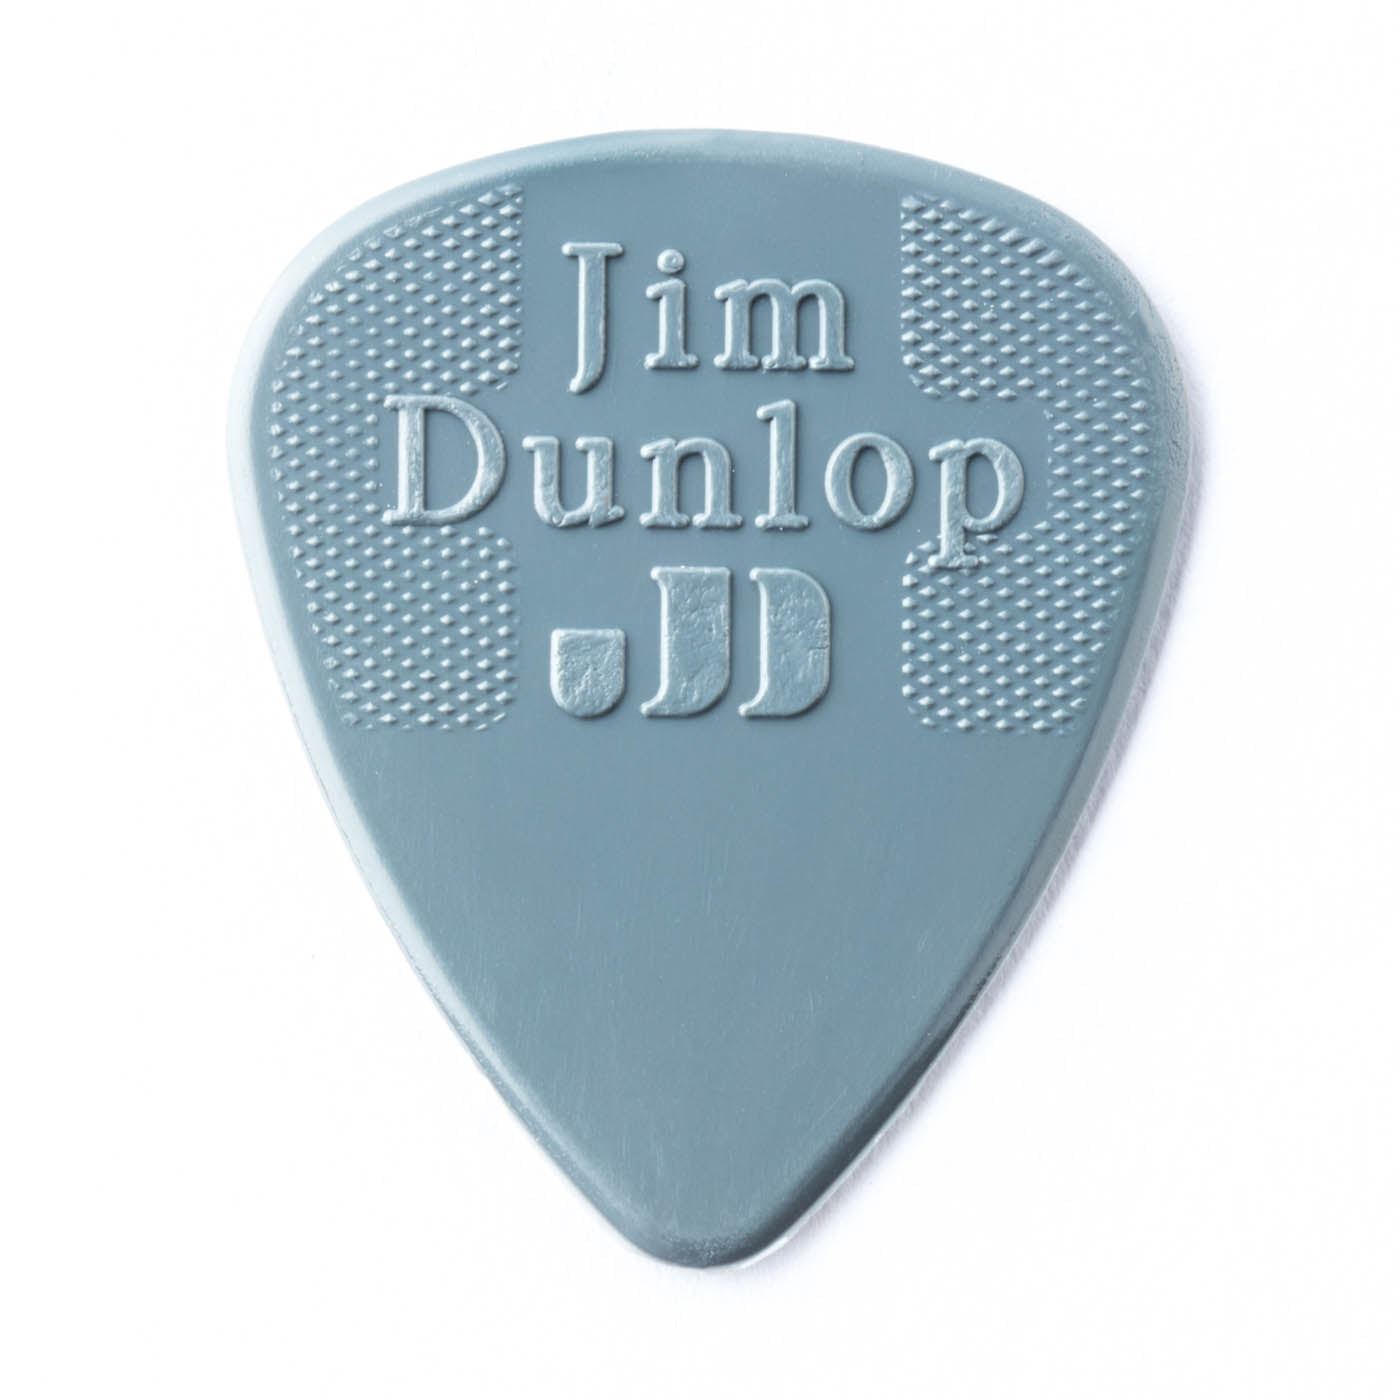 Jim Dunlop Nylon Standard Guitar Picks 0.88mm Bulk Pack of 72 picks